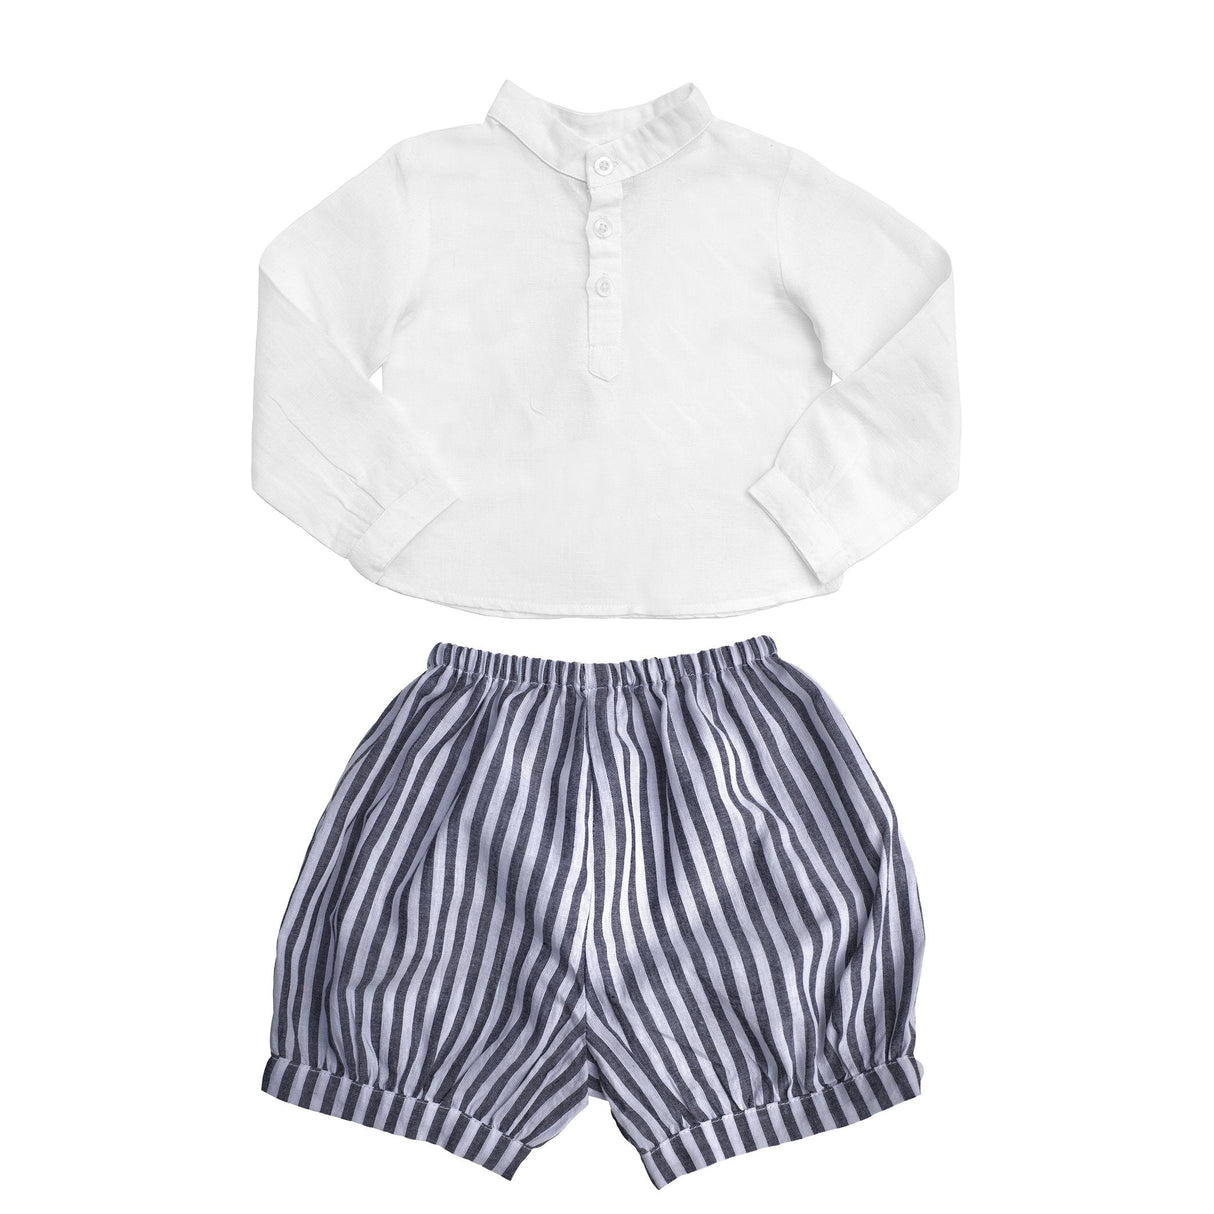 Gift set | boys white shirt and Harbor Island stripe short - HoneyBug 